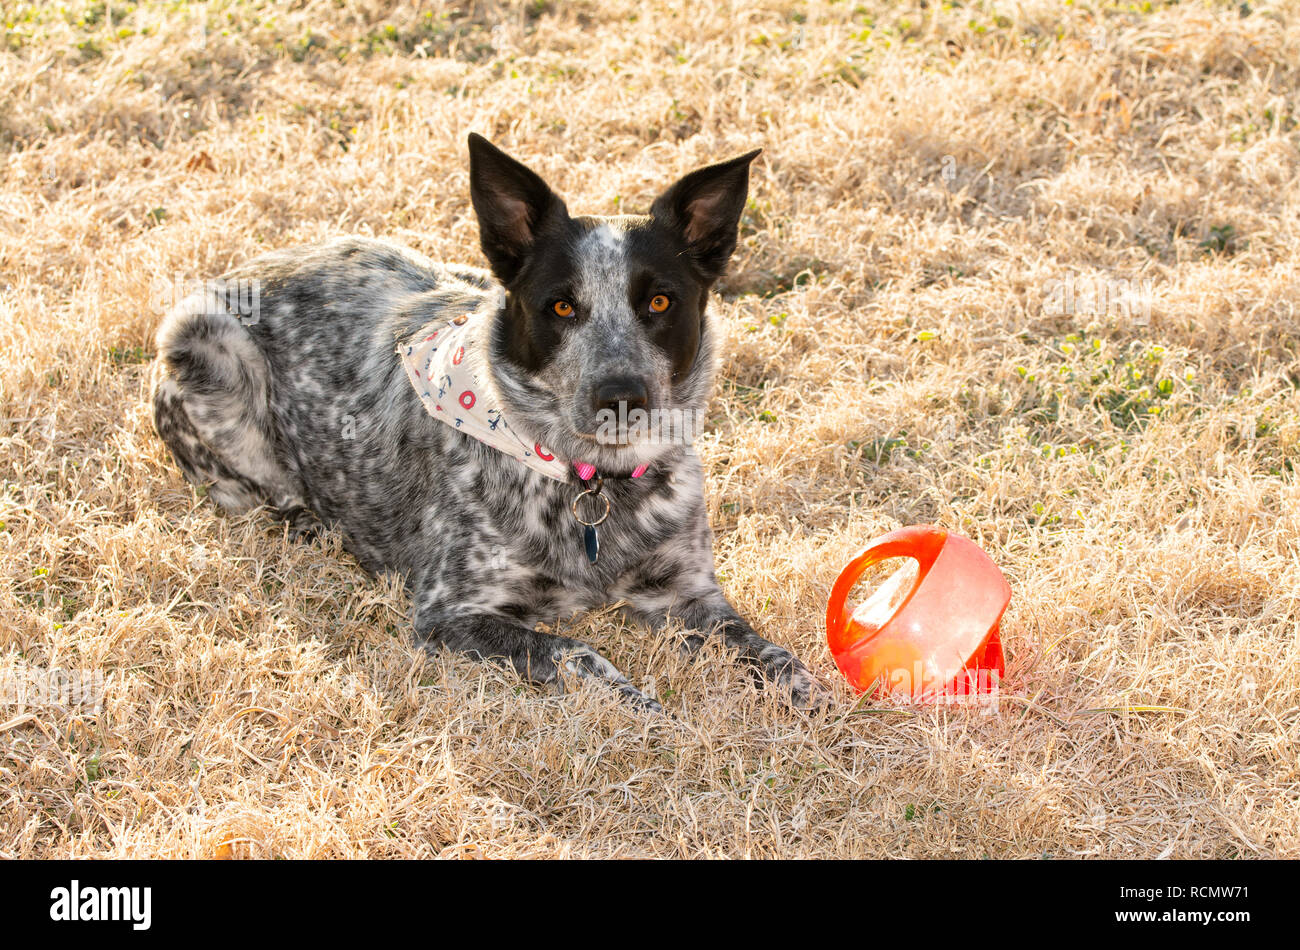 Bianco e nero spotted dog giacente nel gelido mattino erba accanto alla sua sfera, in attesa per voi di venire a giocare con lei Foto Stock